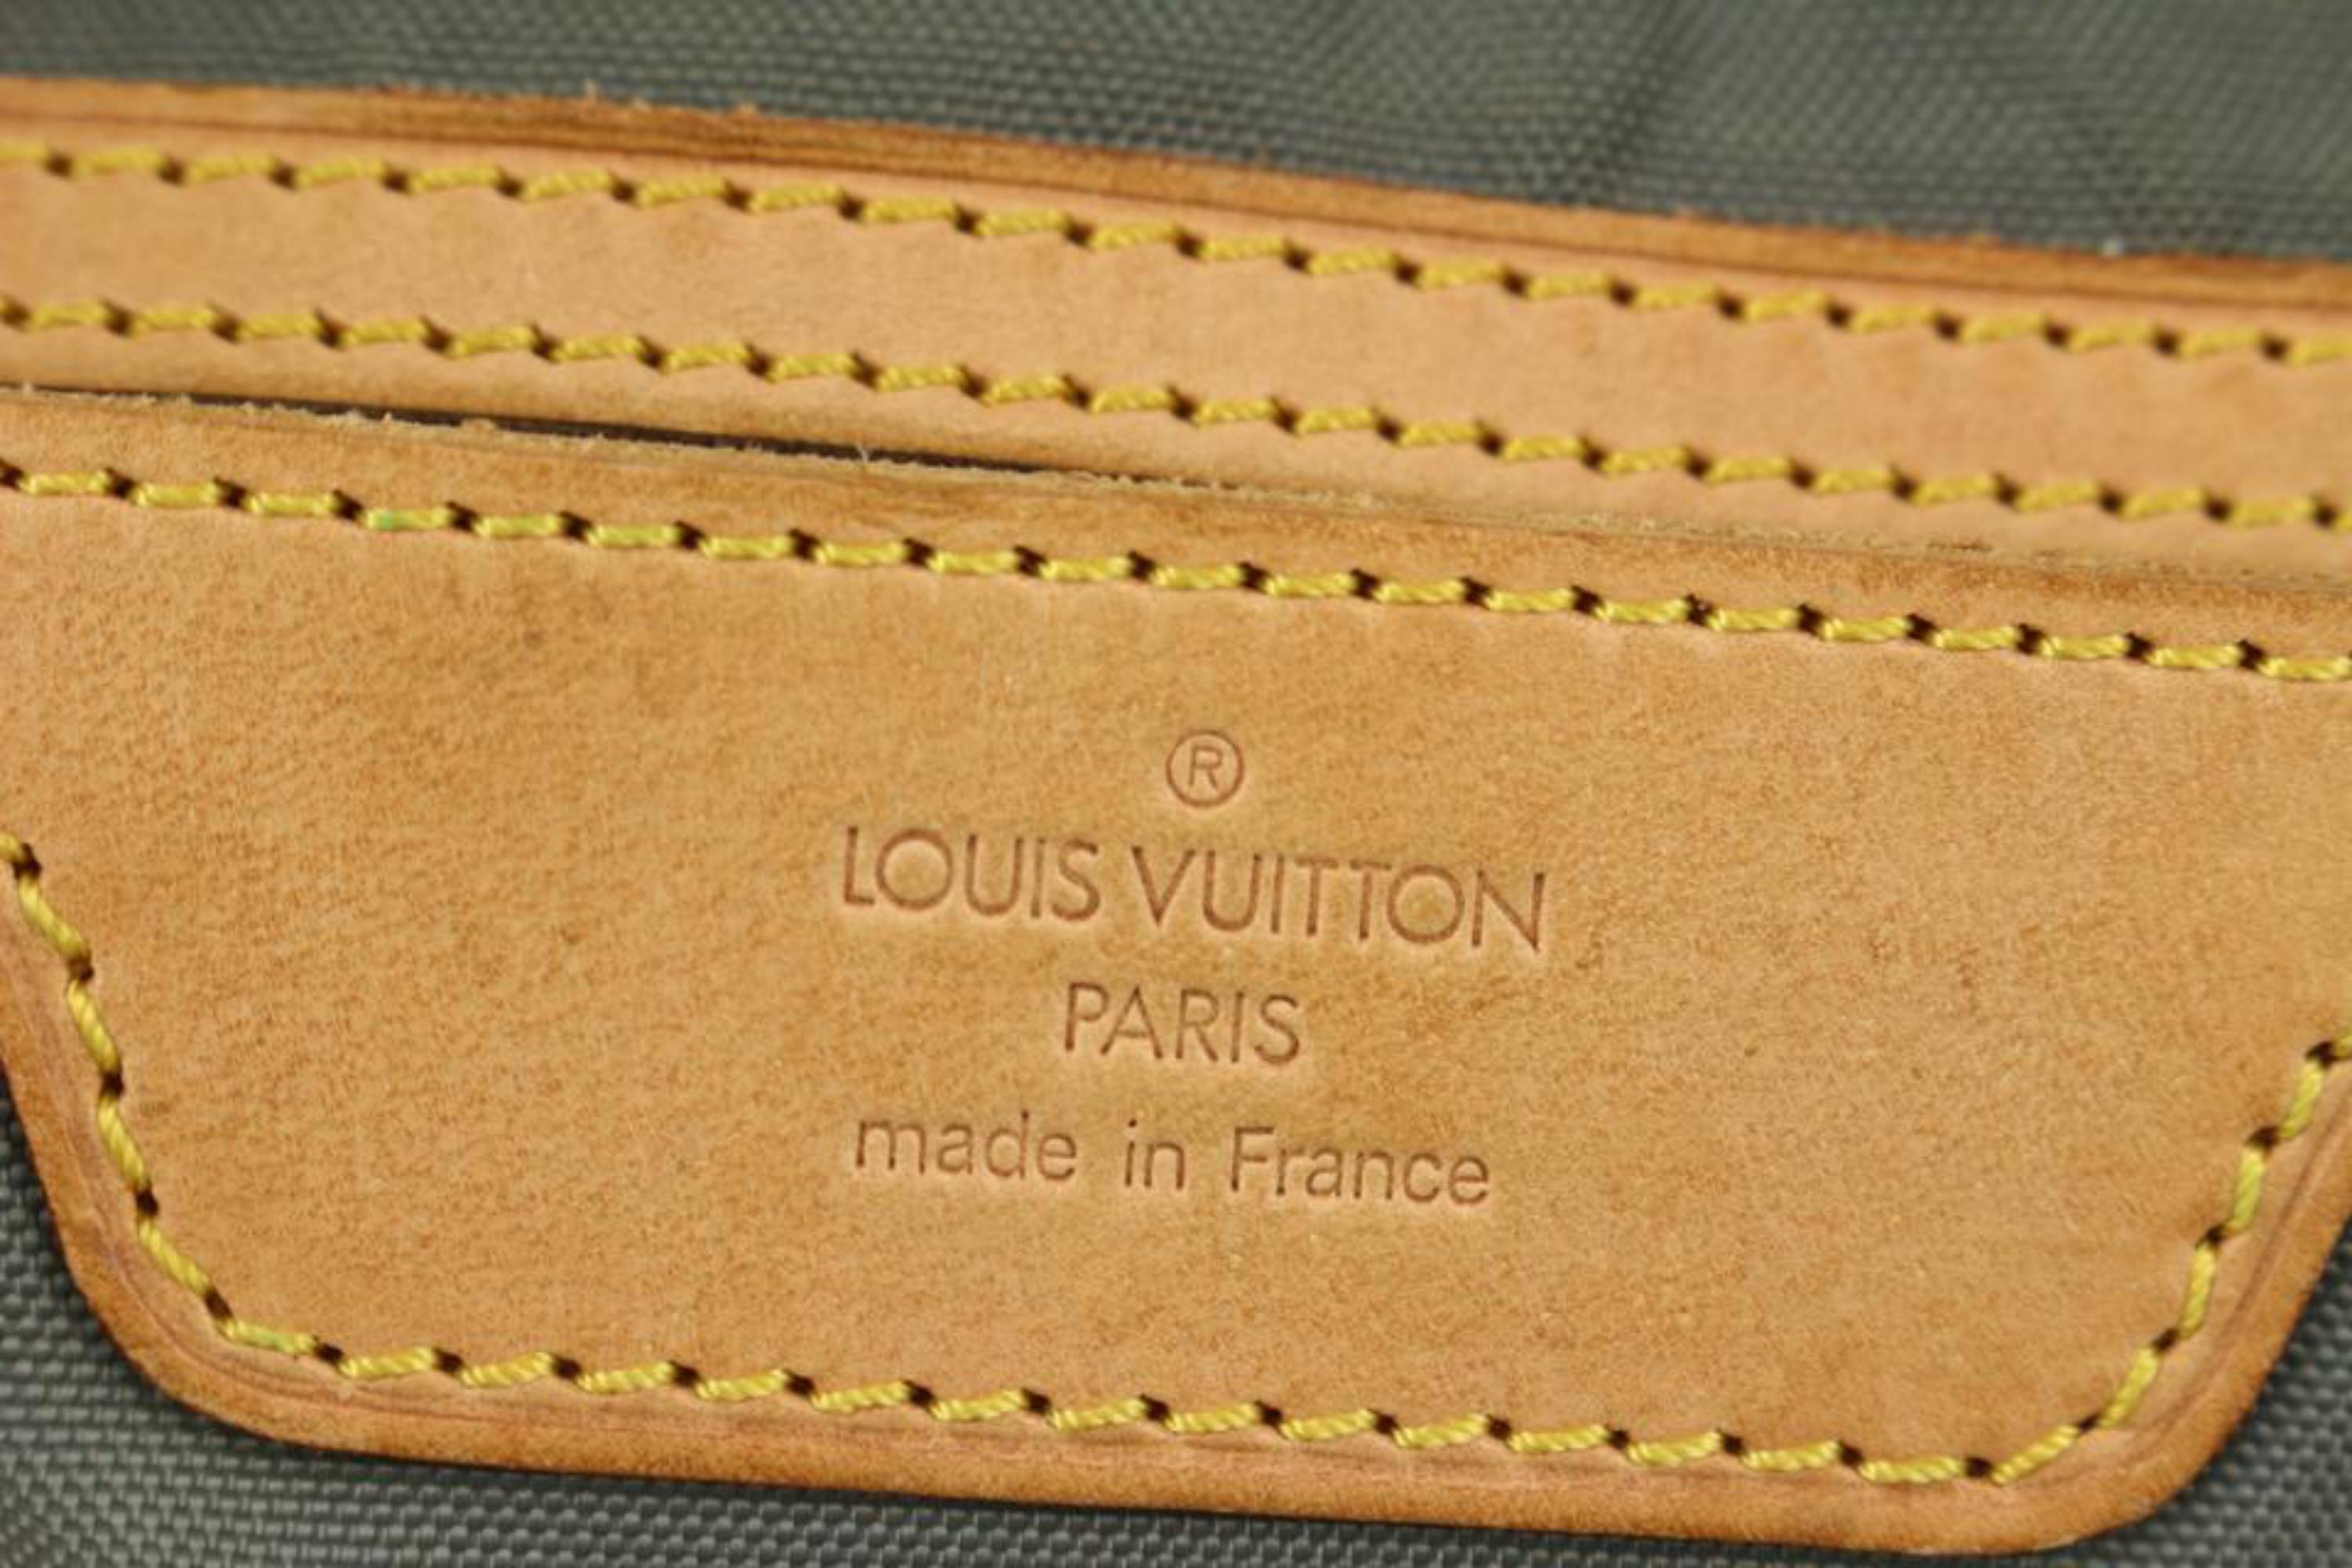 Louis Vuitton Blue LV Cup Sac Plein Air Long Keepall Bag 1015lv43 For Sale 2